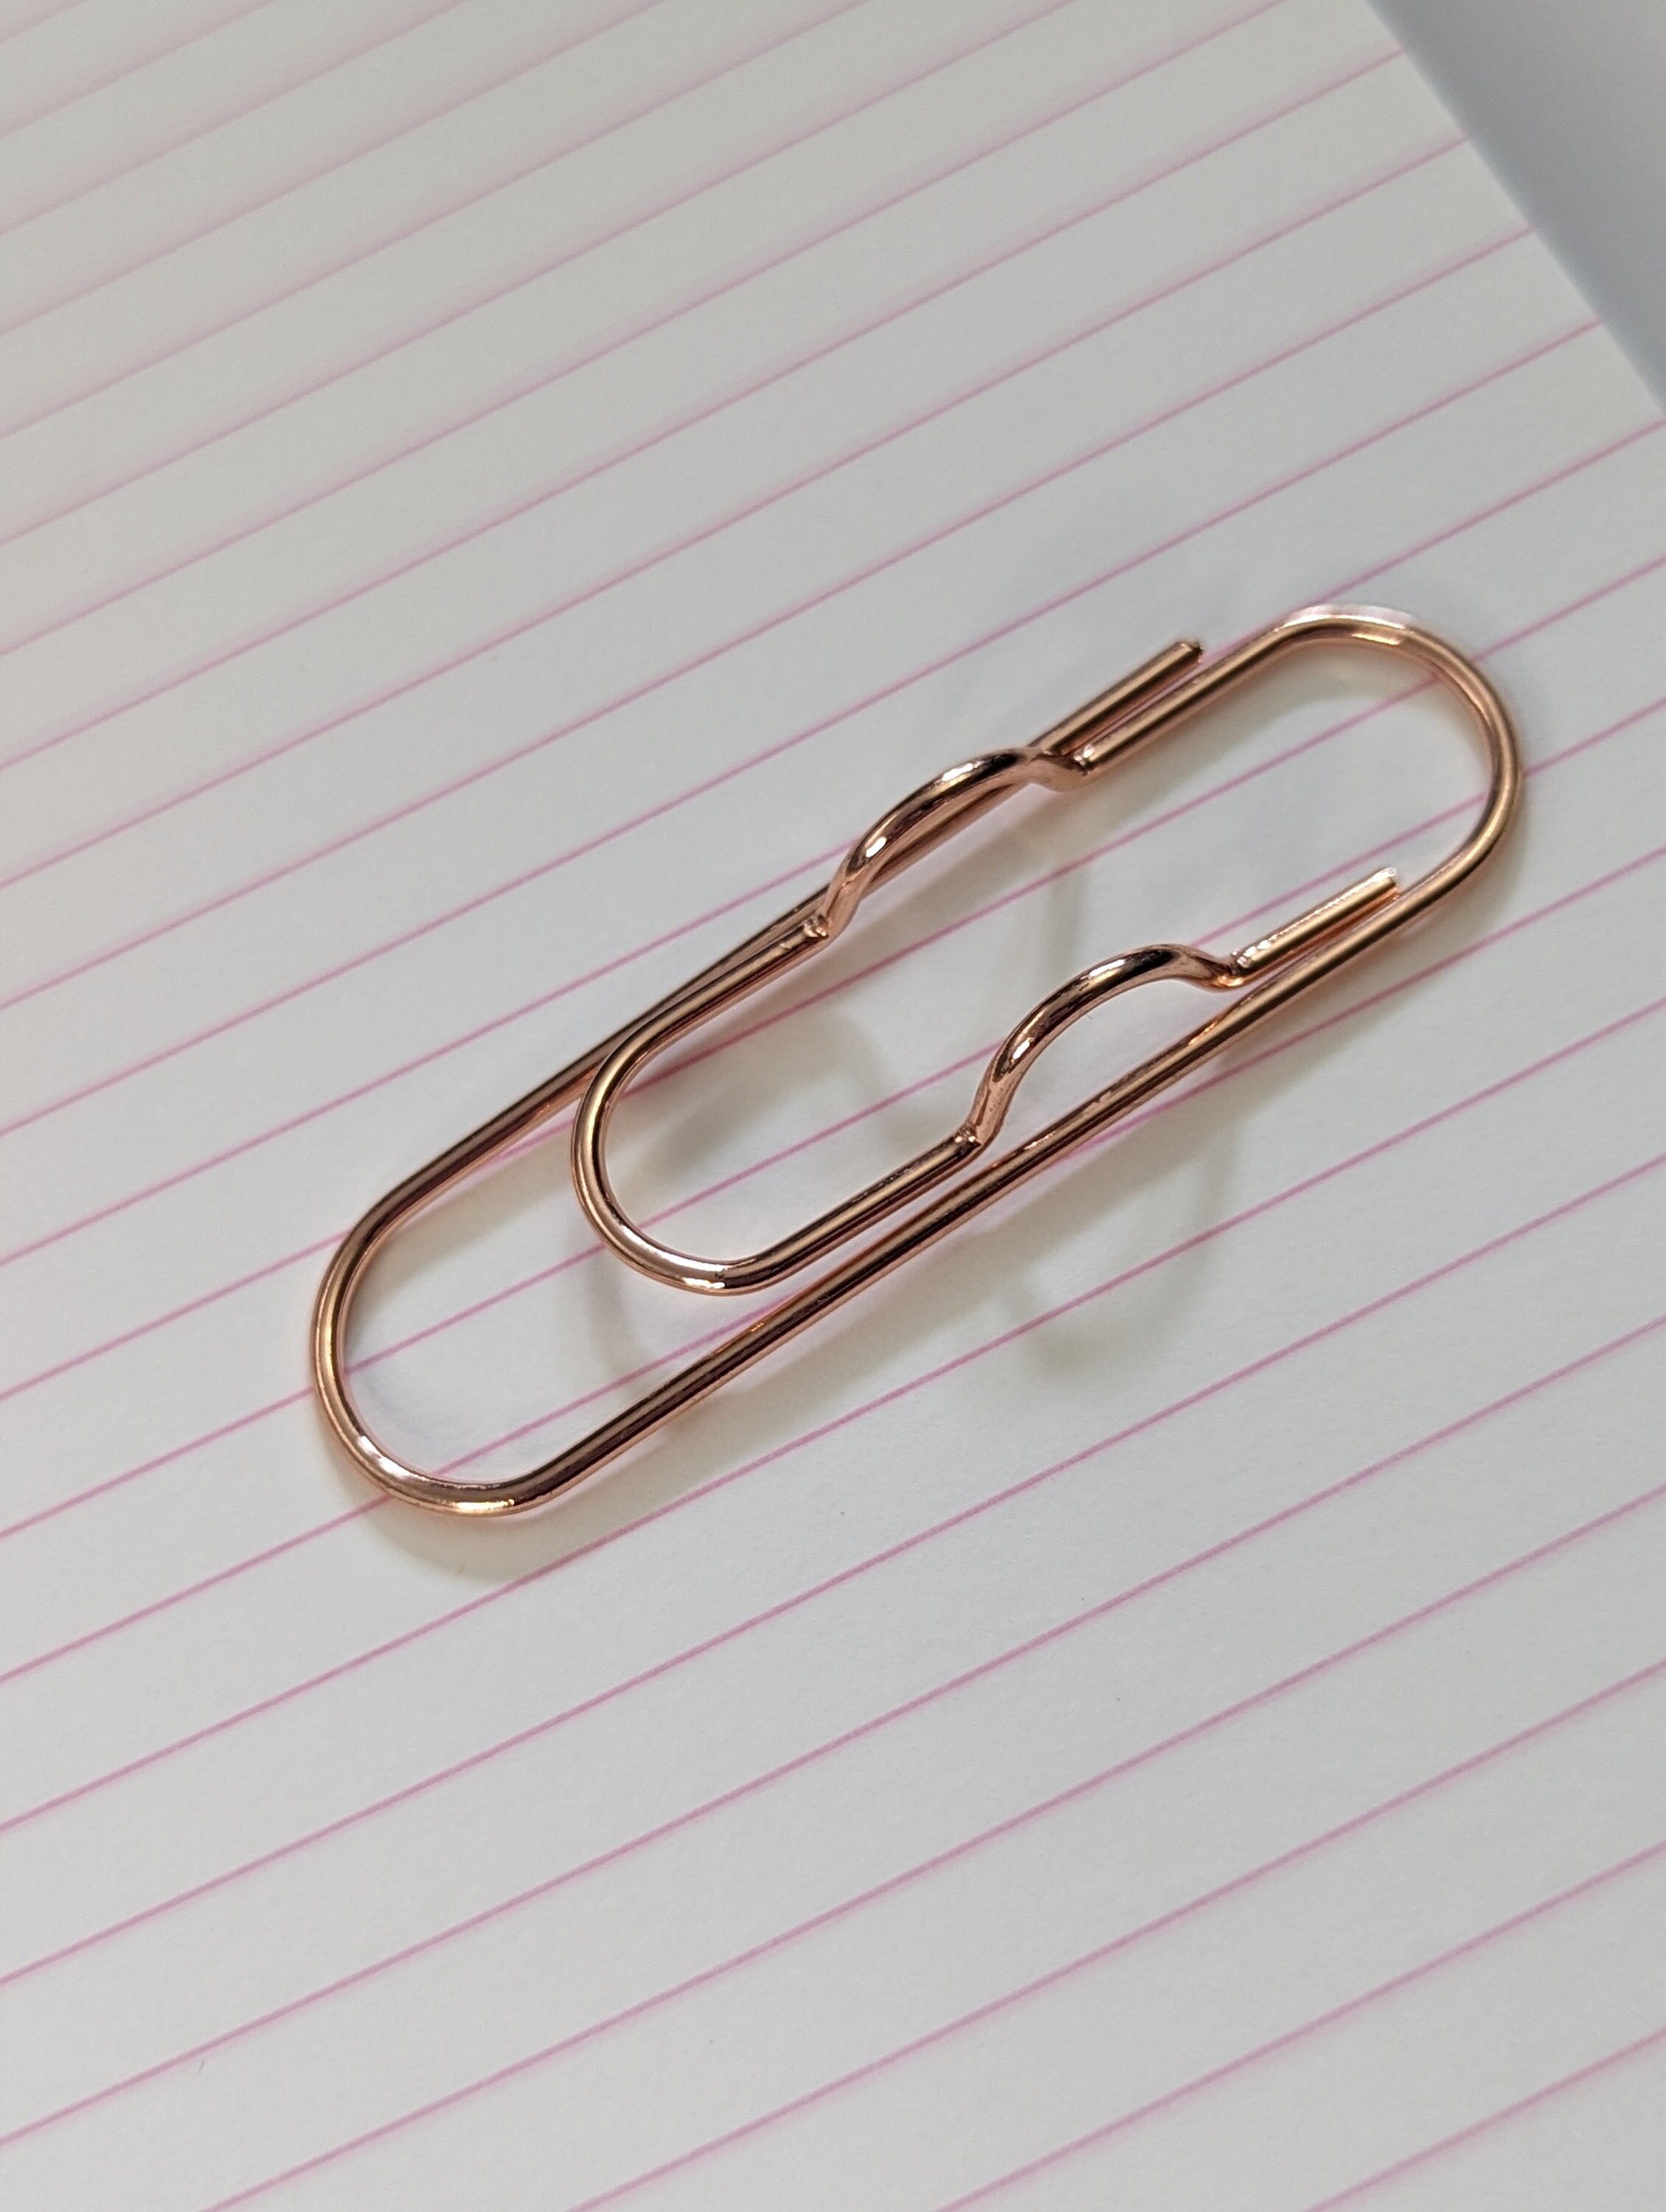 Rose Gold Metal Asterisk Pen Holder Clip